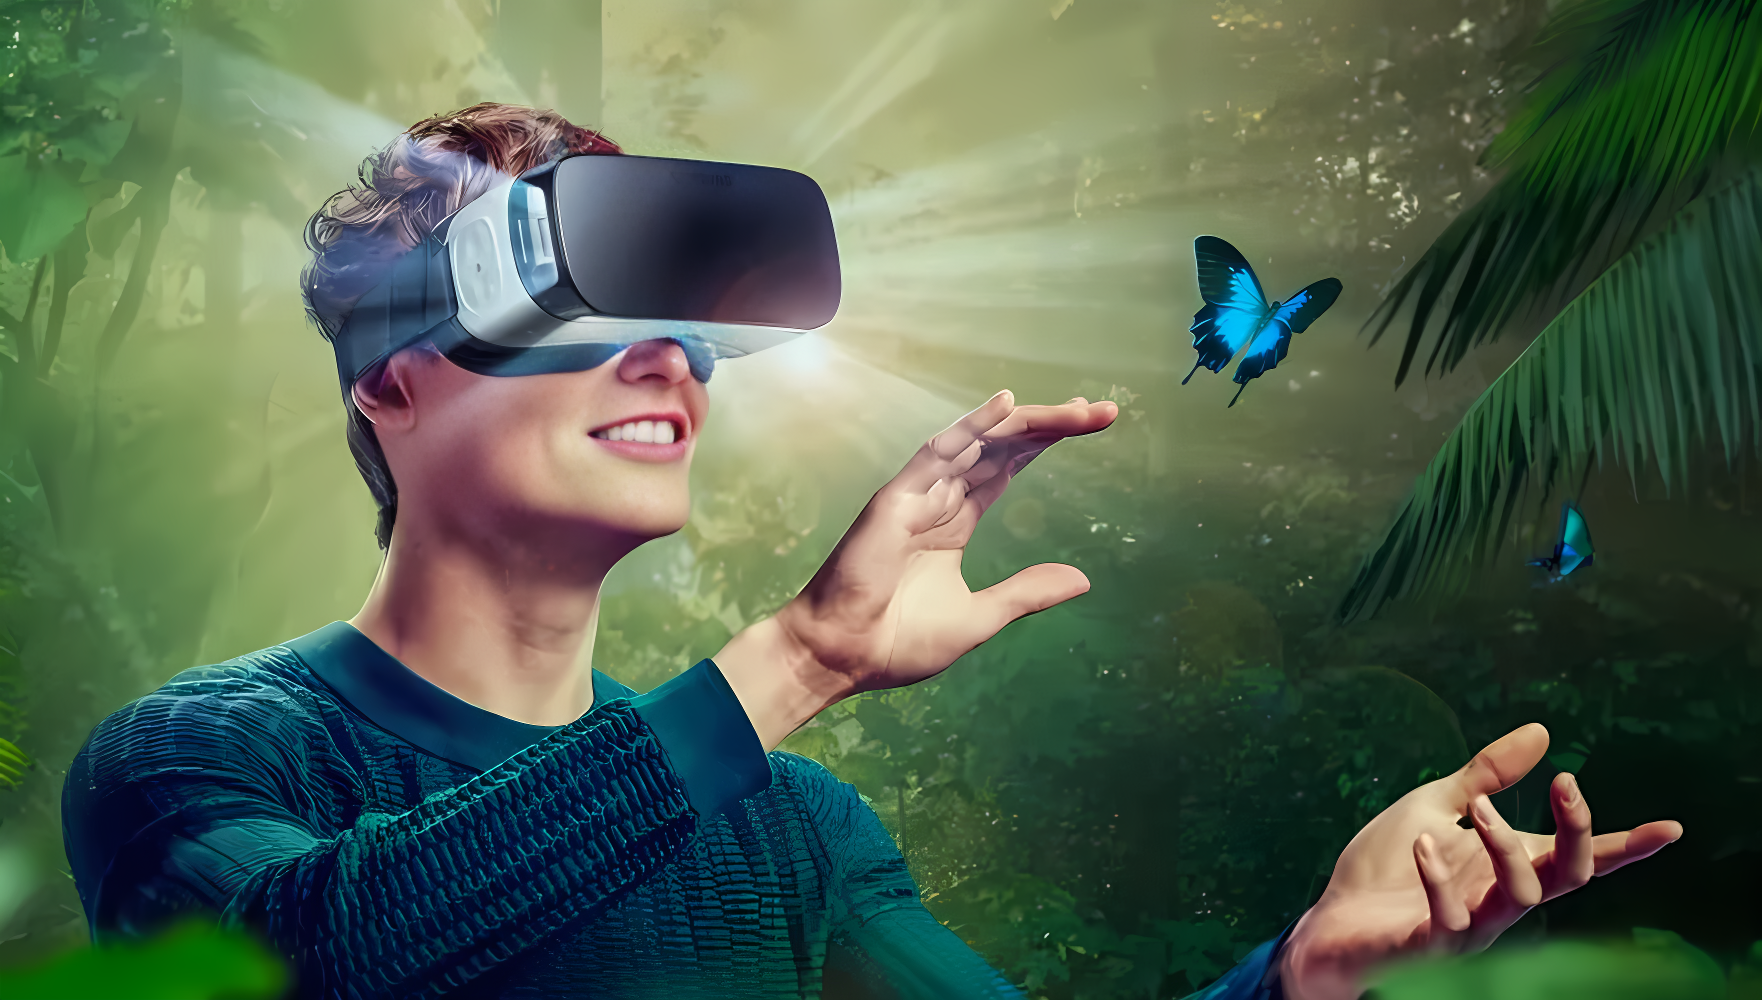 一位年轻人戴着虚拟现实头盔，伸手触摸仿佛在热带丛林中飞舞的蝴蝶，面露微笑，沉浸在虚拟世界的体验中。